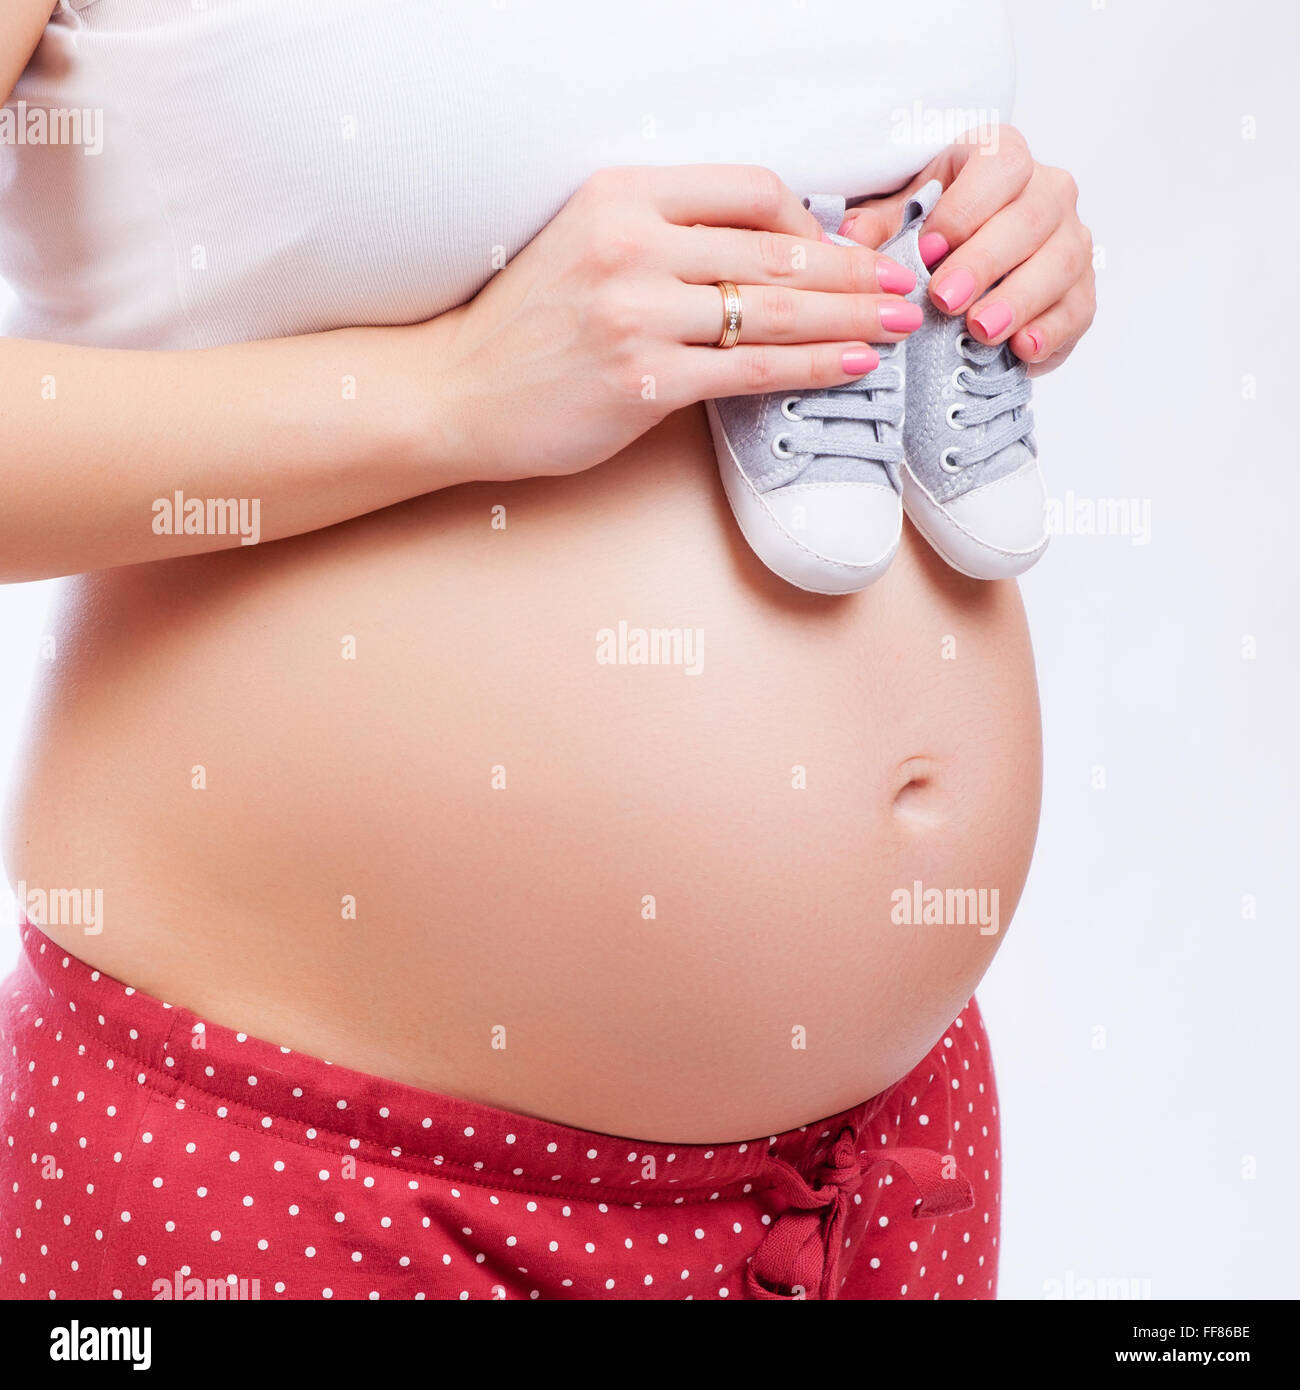 Pequeños zapatos para el feto en el vientre de la mujer embarazada Foto de stock